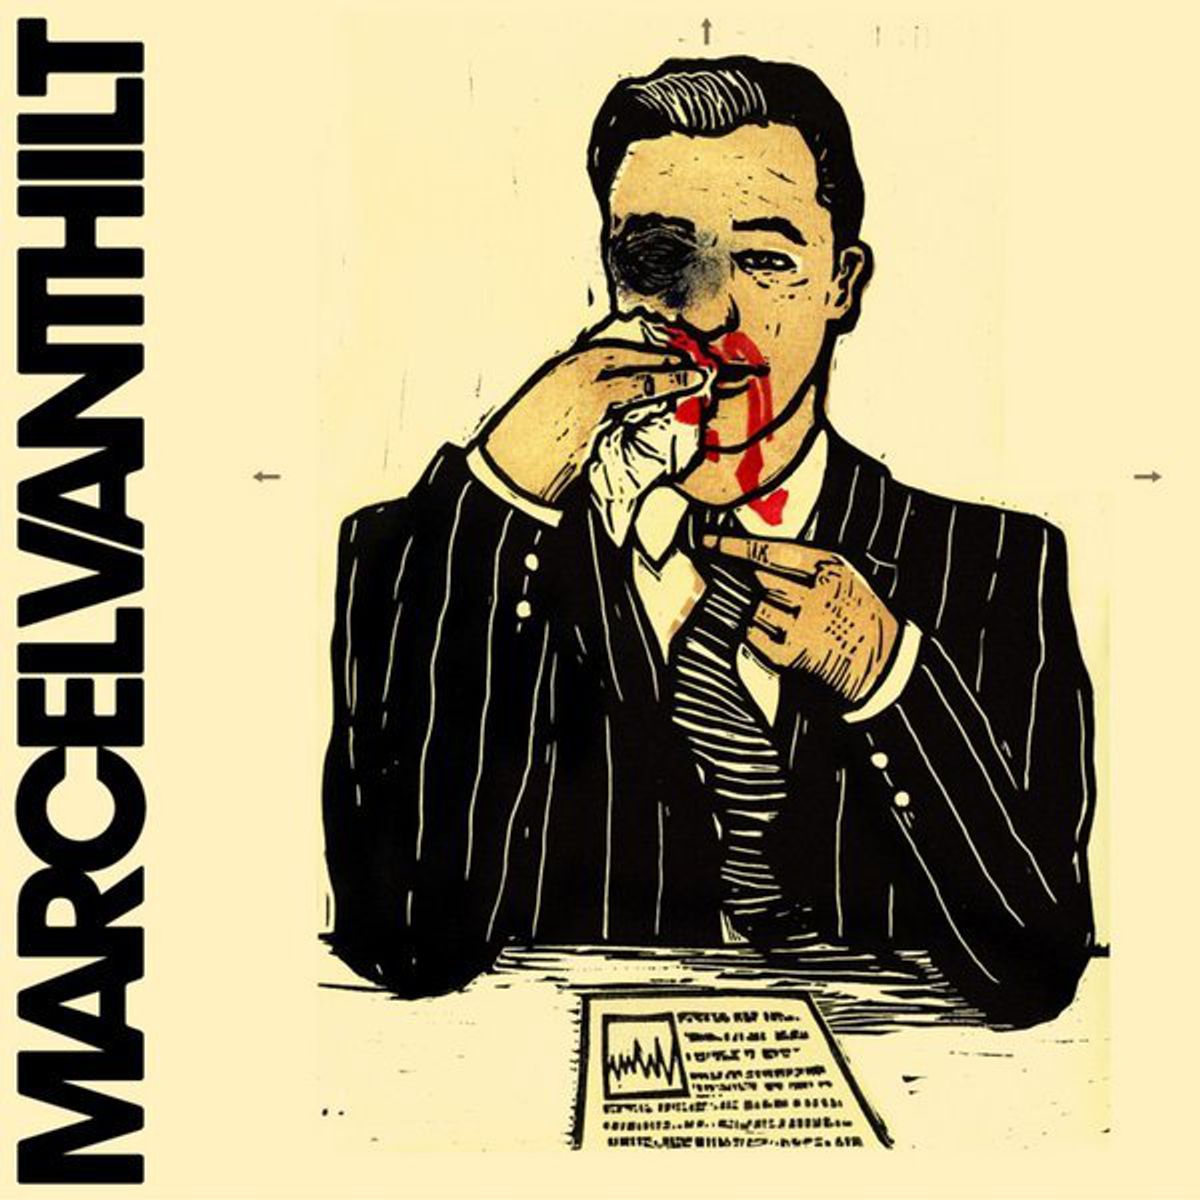 Marcel Vanthilt - 'Paracetamol'